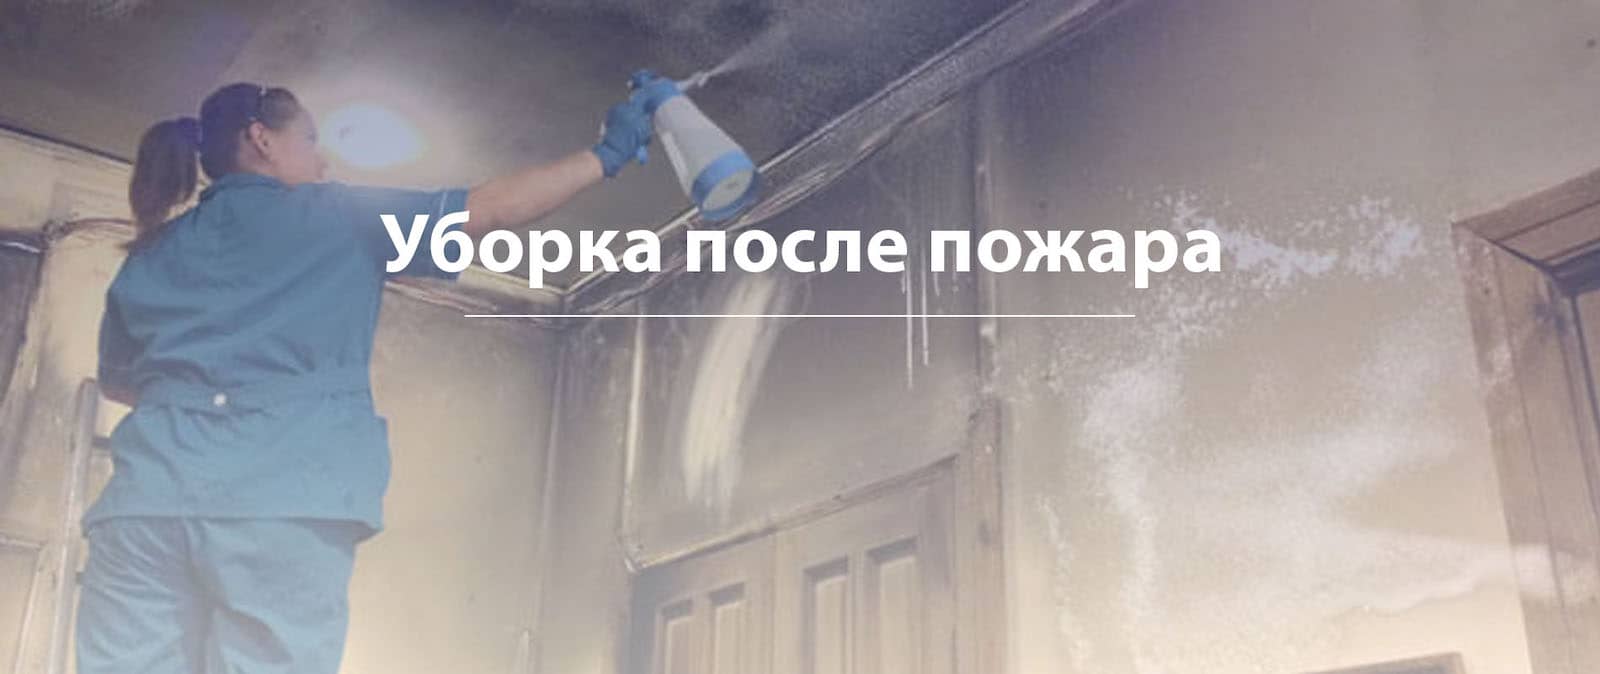 уборка после пожара в Тольятти